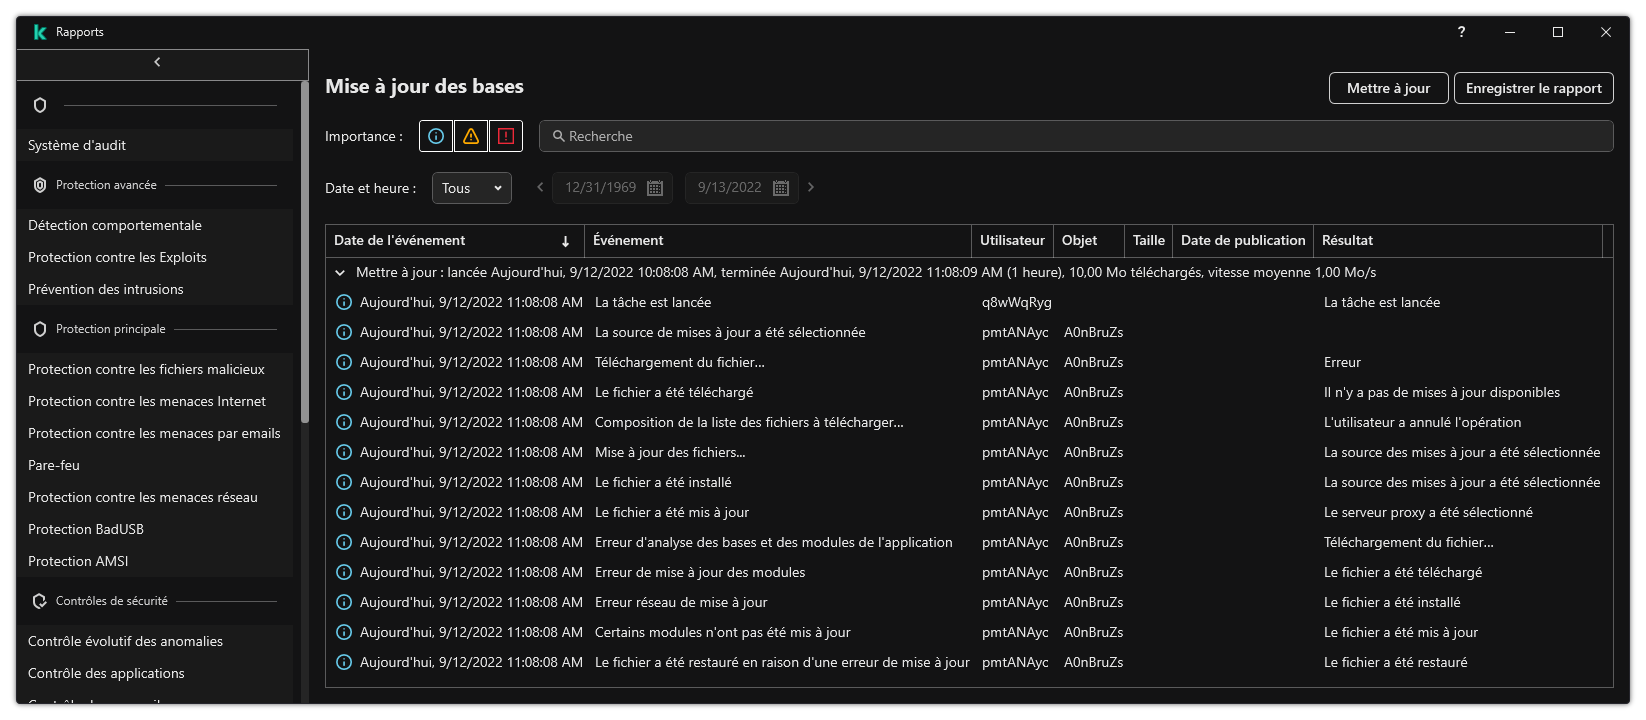 Une fenêtre avec la liste des événements dans le rapport. L'utilisateur peut filtrer/trier les événements et enregistrer les rapports dans un fichier.